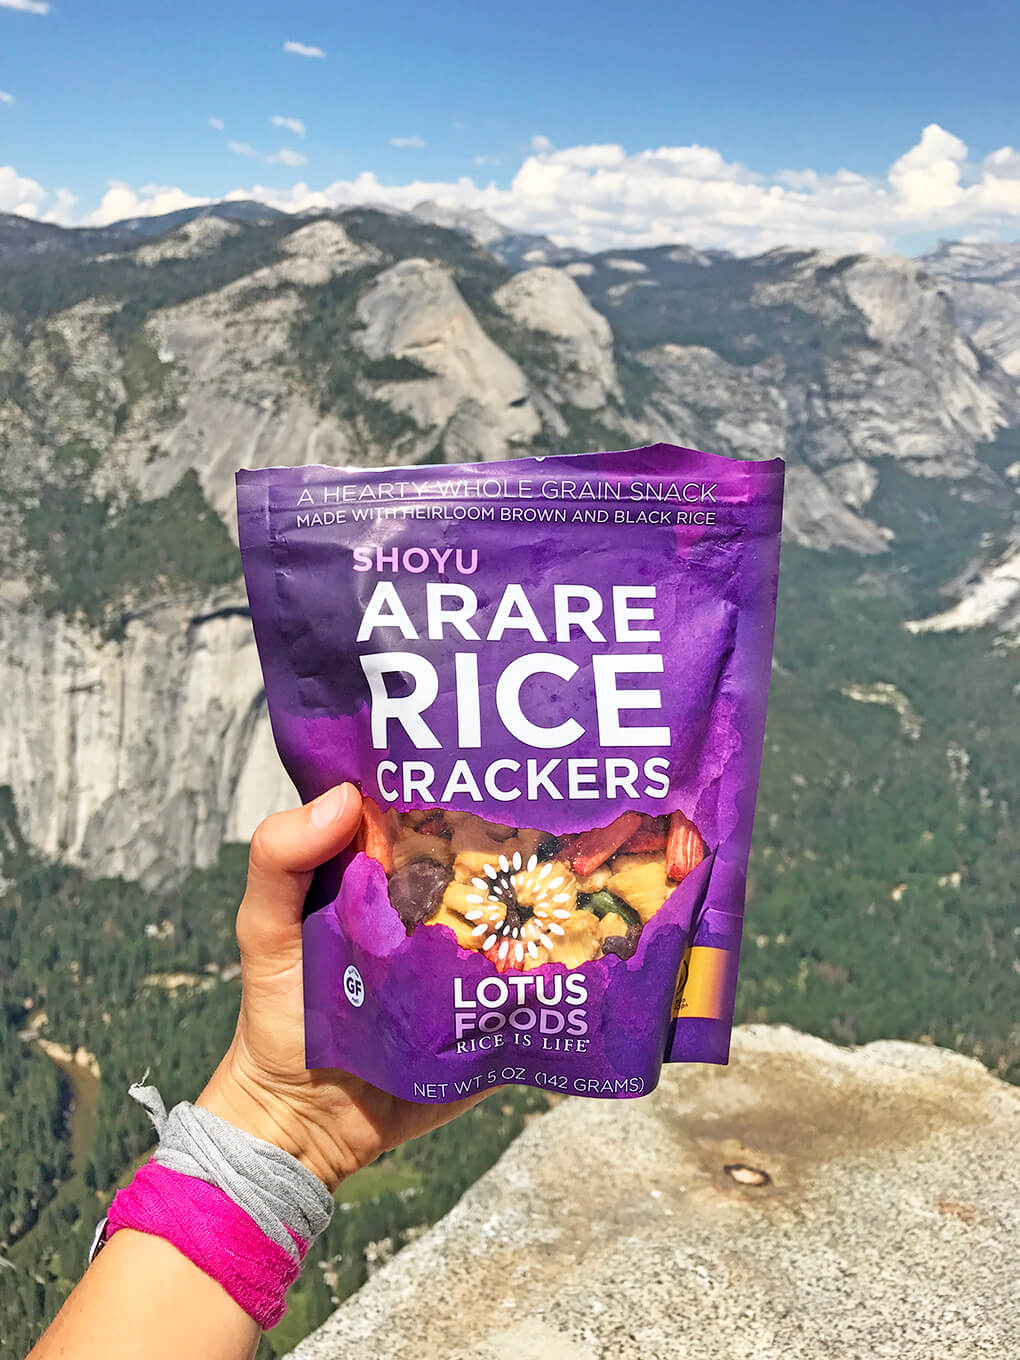 Hiking Yosemite sarahkayhoffman.com Snacks Shoyu Lotus Foods Arare Crackers